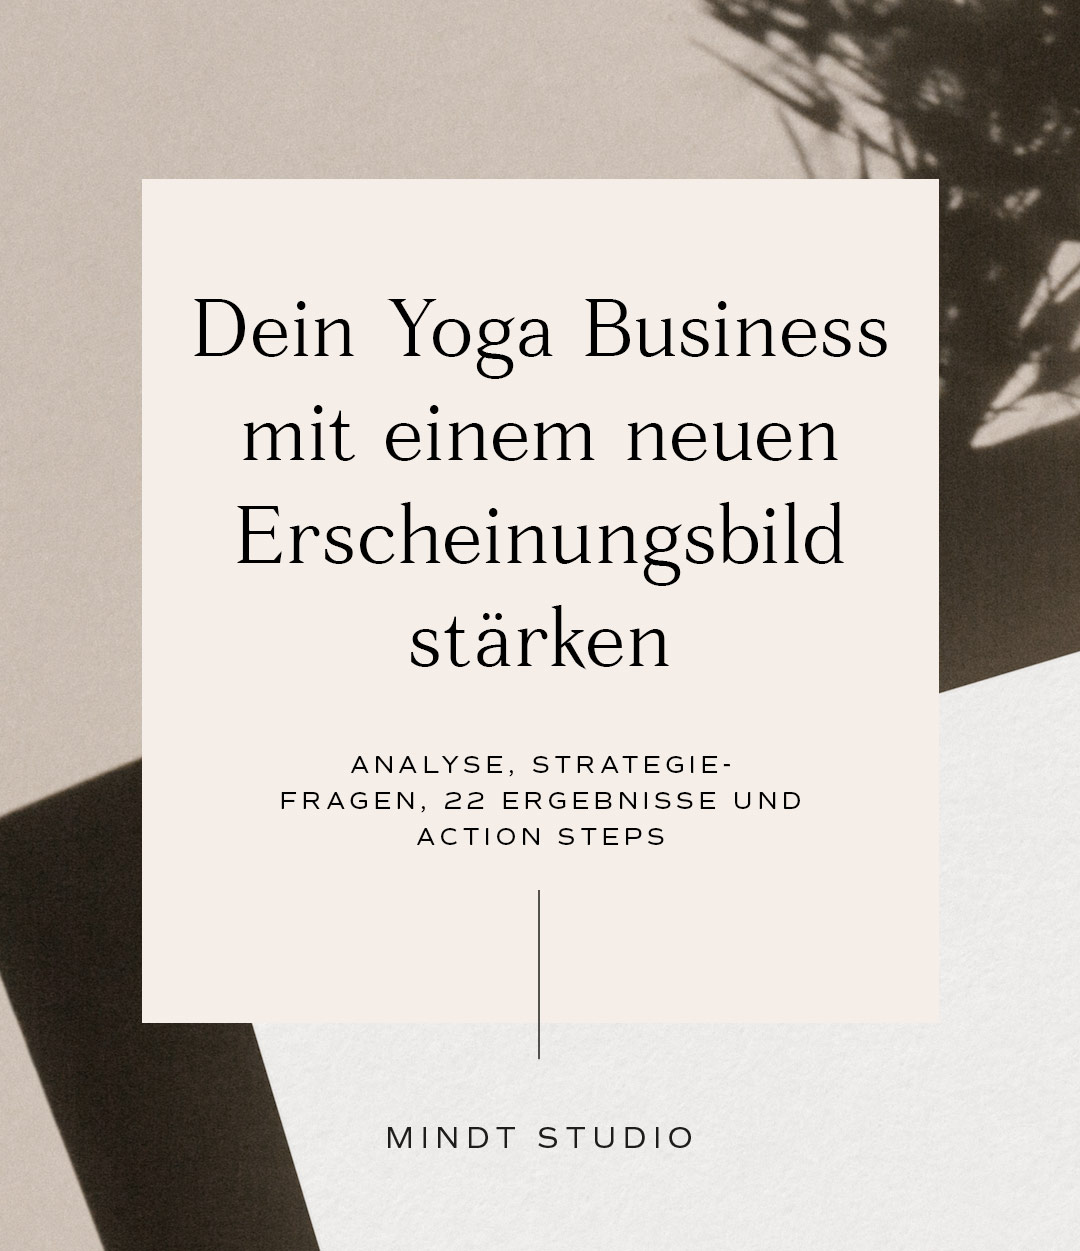 Dein Yoga Business stärken